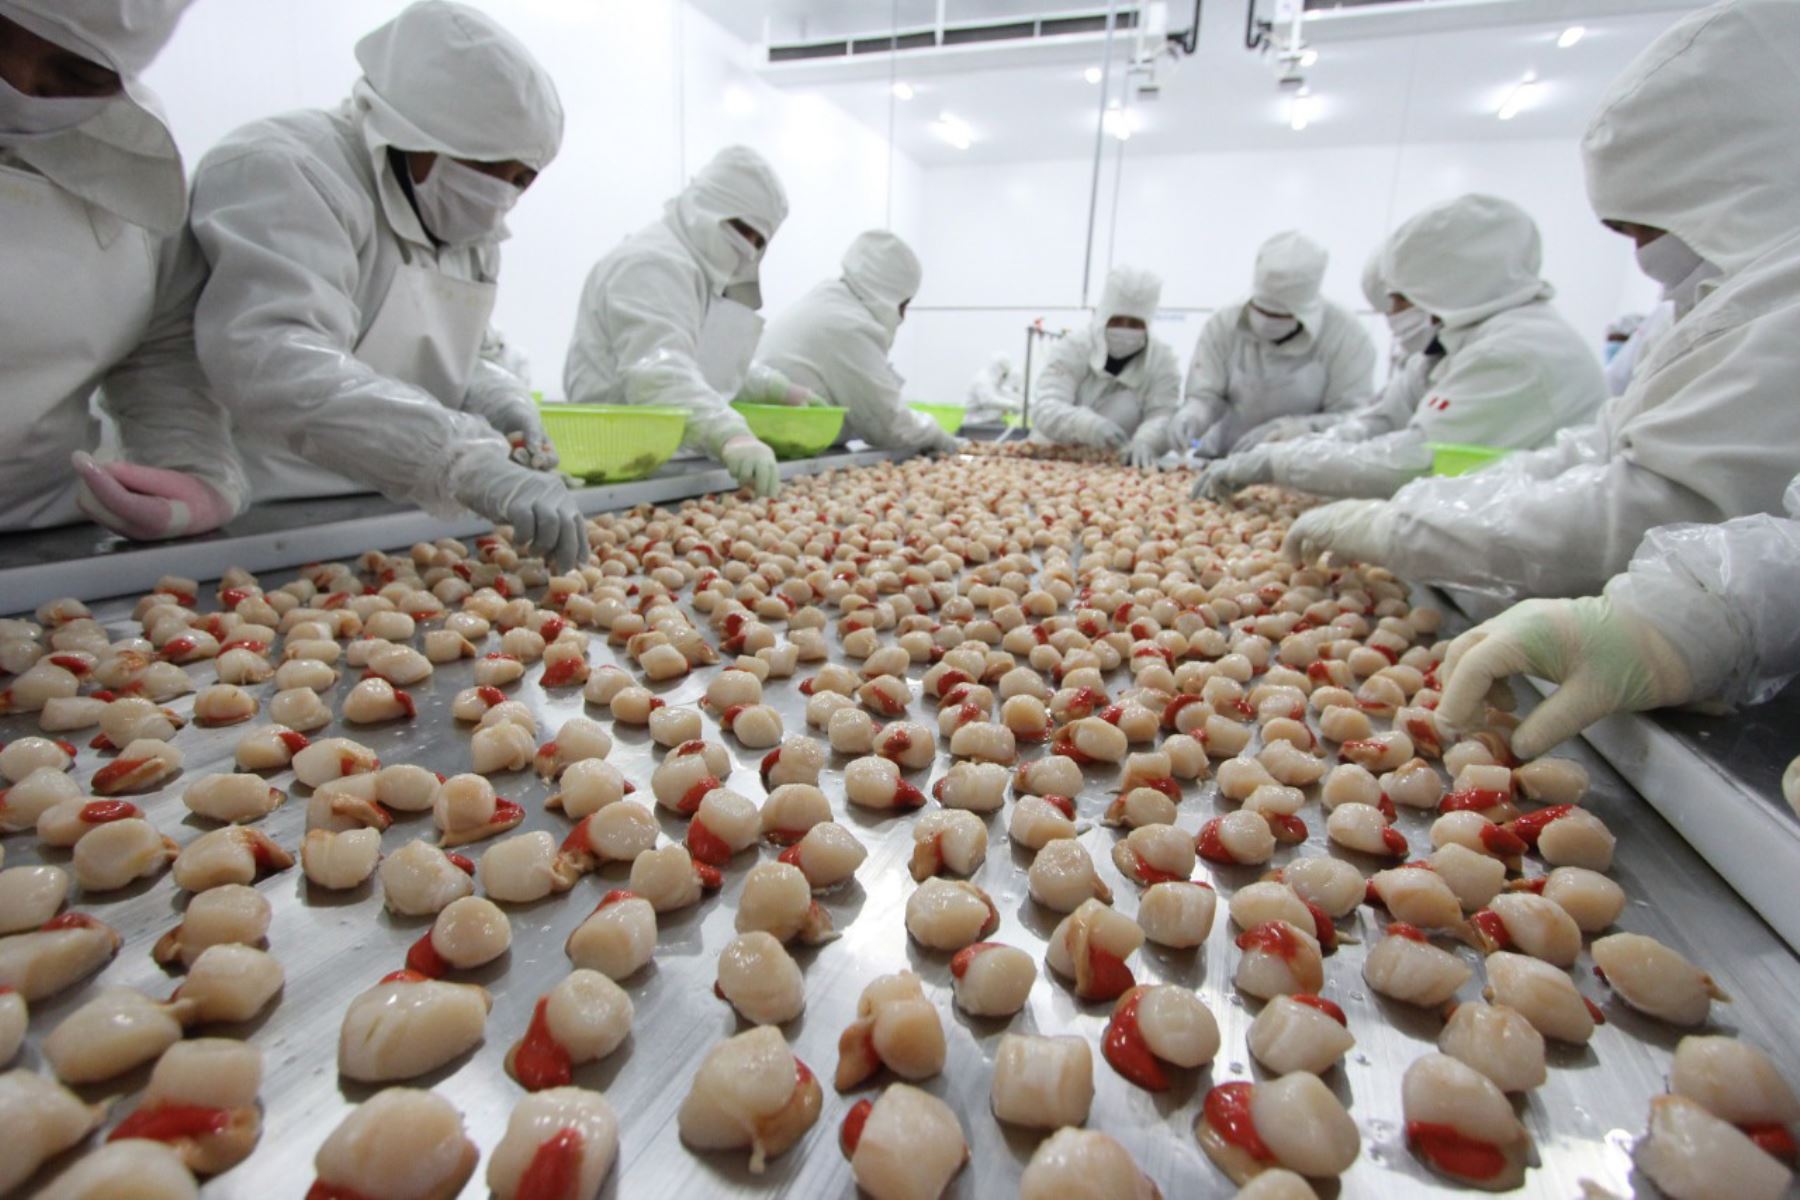 Las conchas de abanico cosechadas del área de producción Tunga-Queso en la Bahía de Independencia (Pisco) pueden ser directamente destinadas al procesamiento o comercialización para el consumo humano directo.